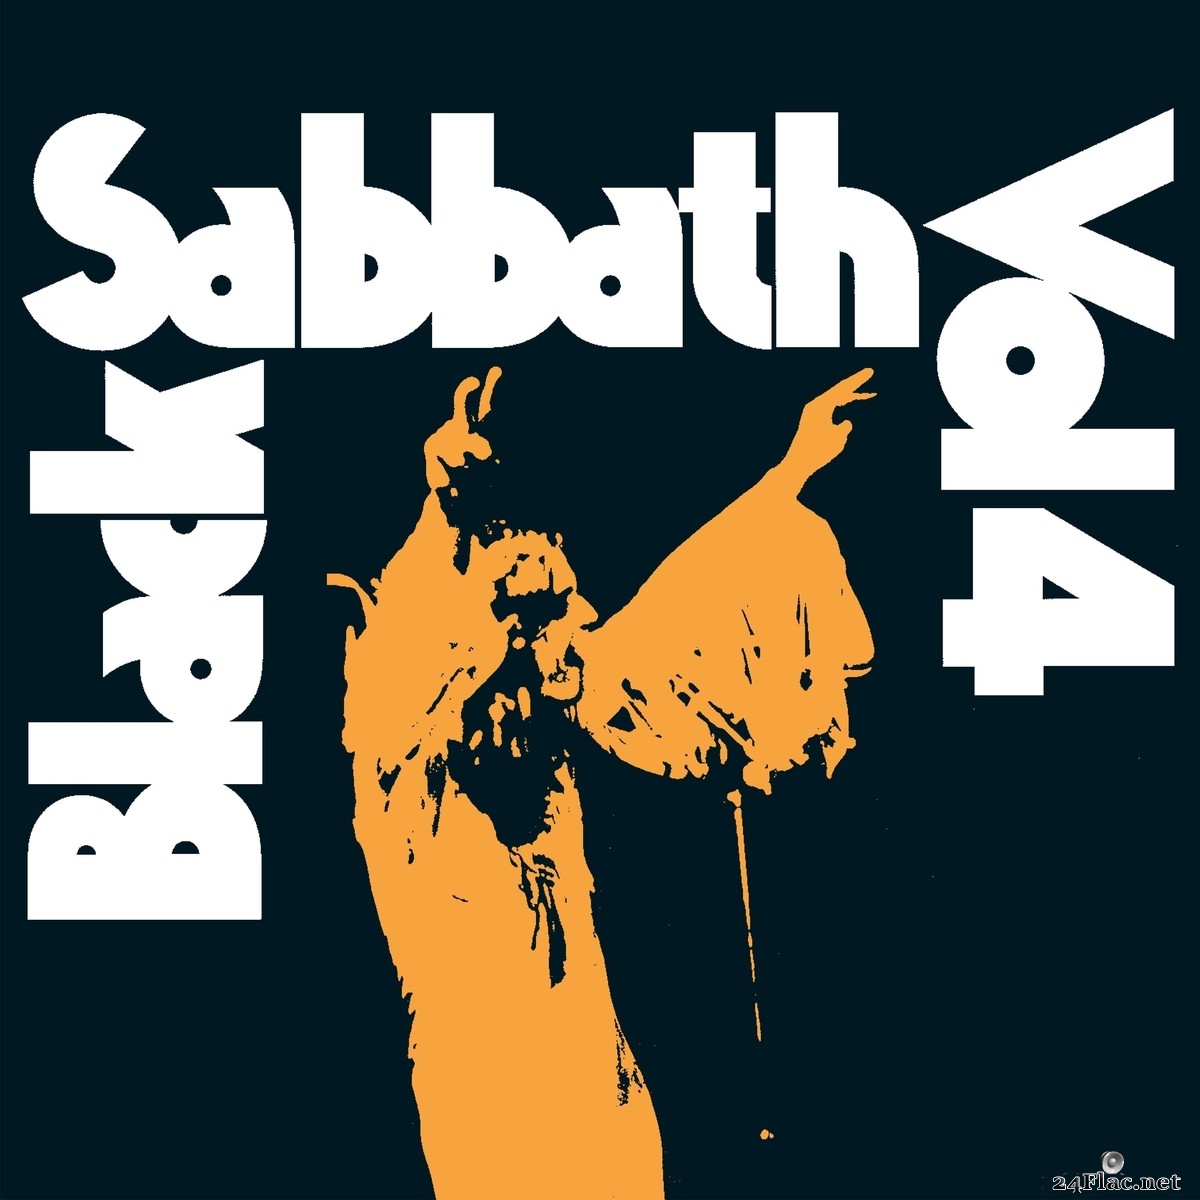 Black Sabbath - Vol. 4 (2021 Remaster) (2021) FLAC + Hi-Res